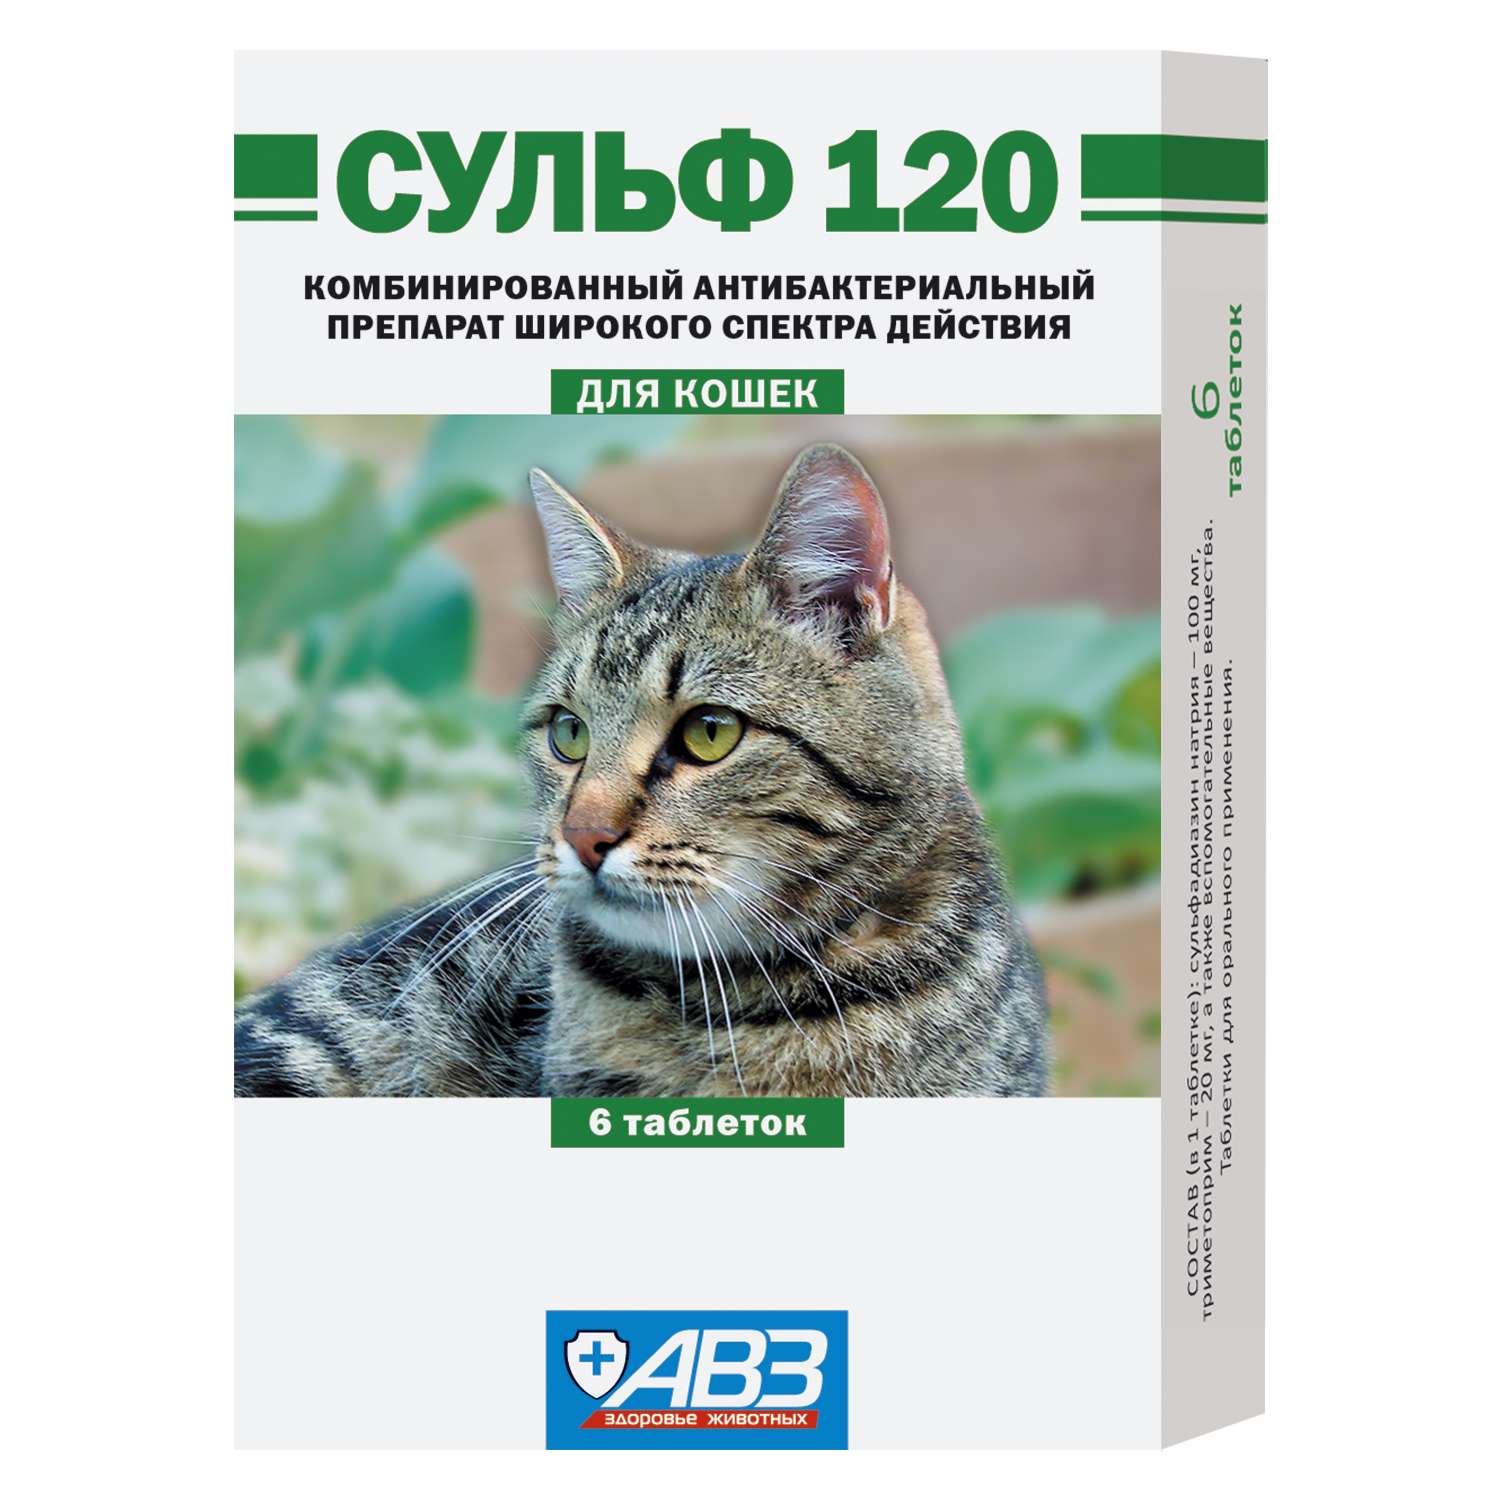 Препарат антибактериальный для кошек АВЗ Сульф 120 6таблеток - фото 1